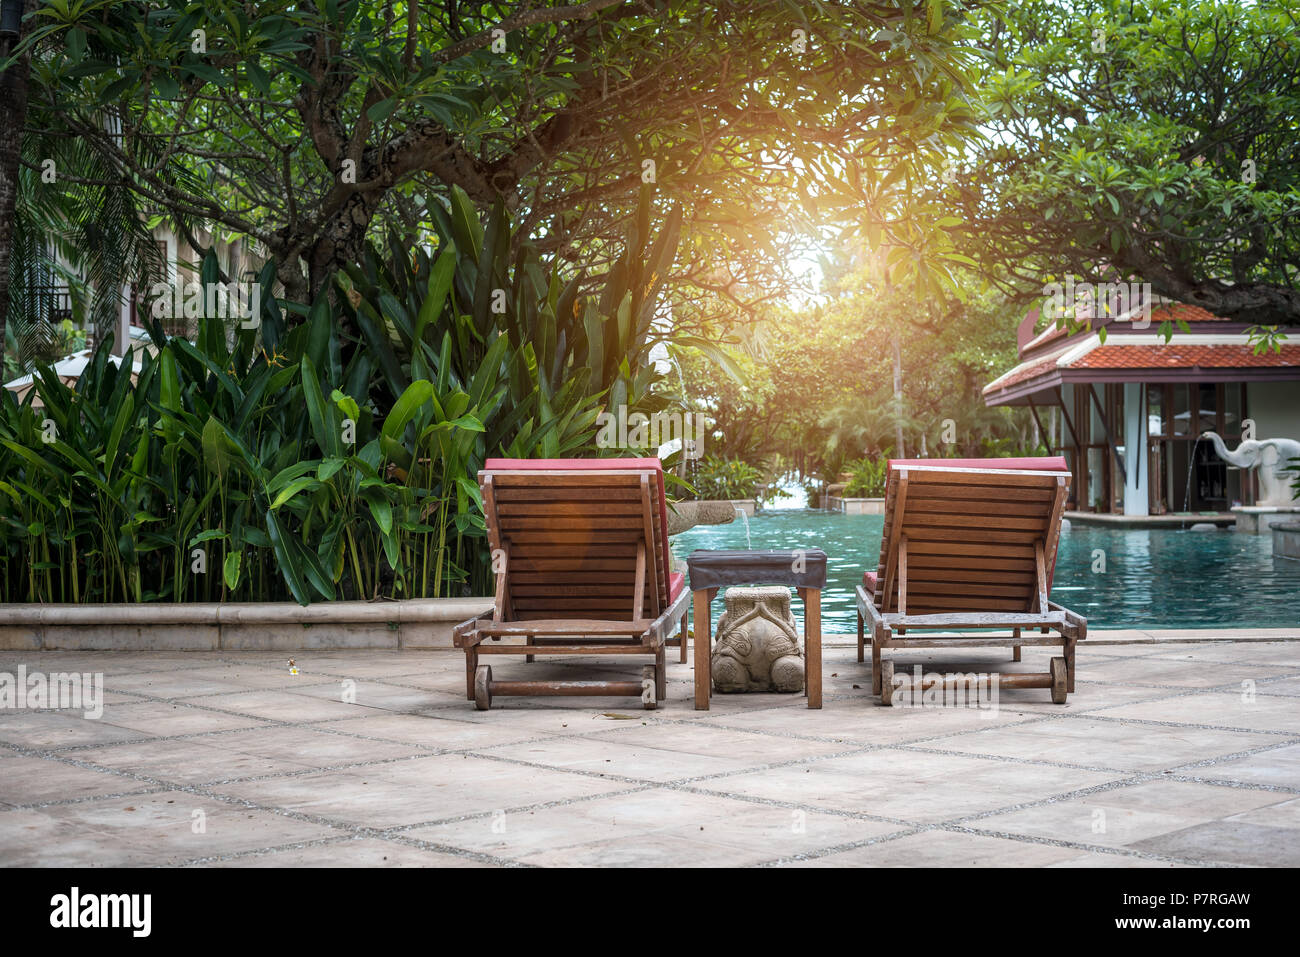 Schone Liege Stuhl In Der Nahe Des Pools Urlaub Und Entspannung Lebensstile Und Interior Design Fruhling Und Sommer Thema Orange Sunligh Stockfotografie Alamy